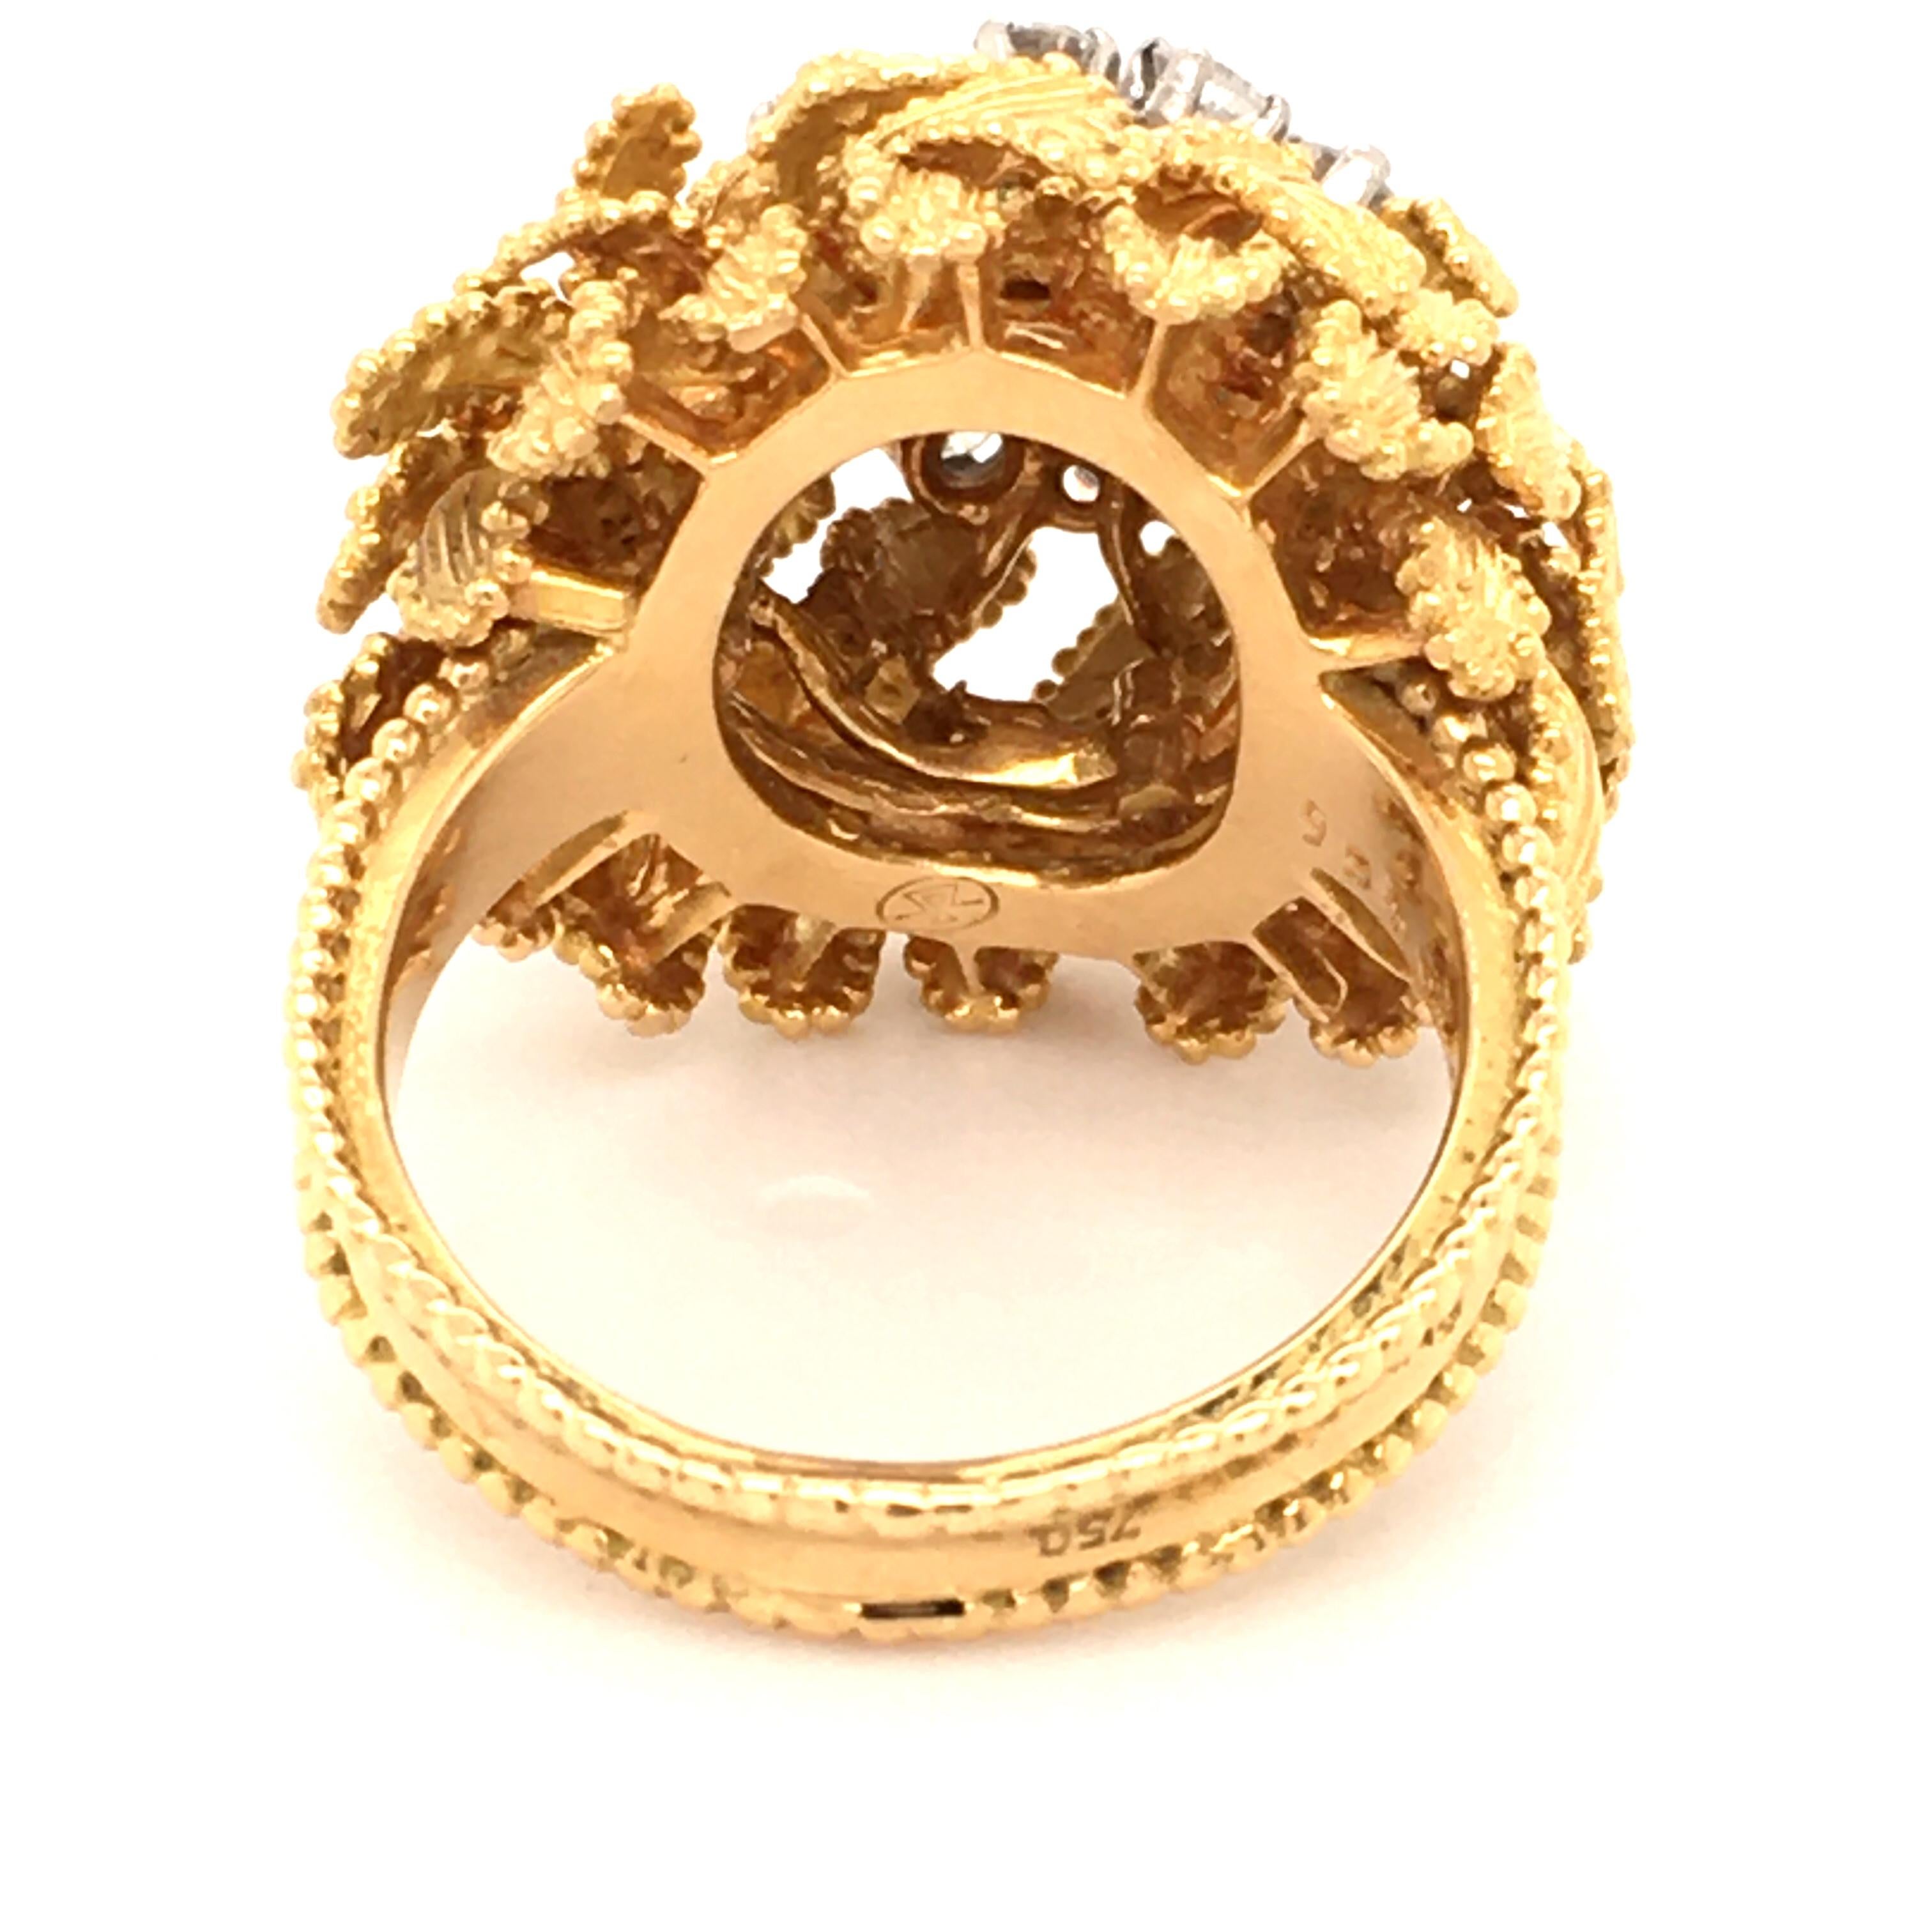 Gubelin Diamond Ring in 18 Karat Yellow and White Gold 5